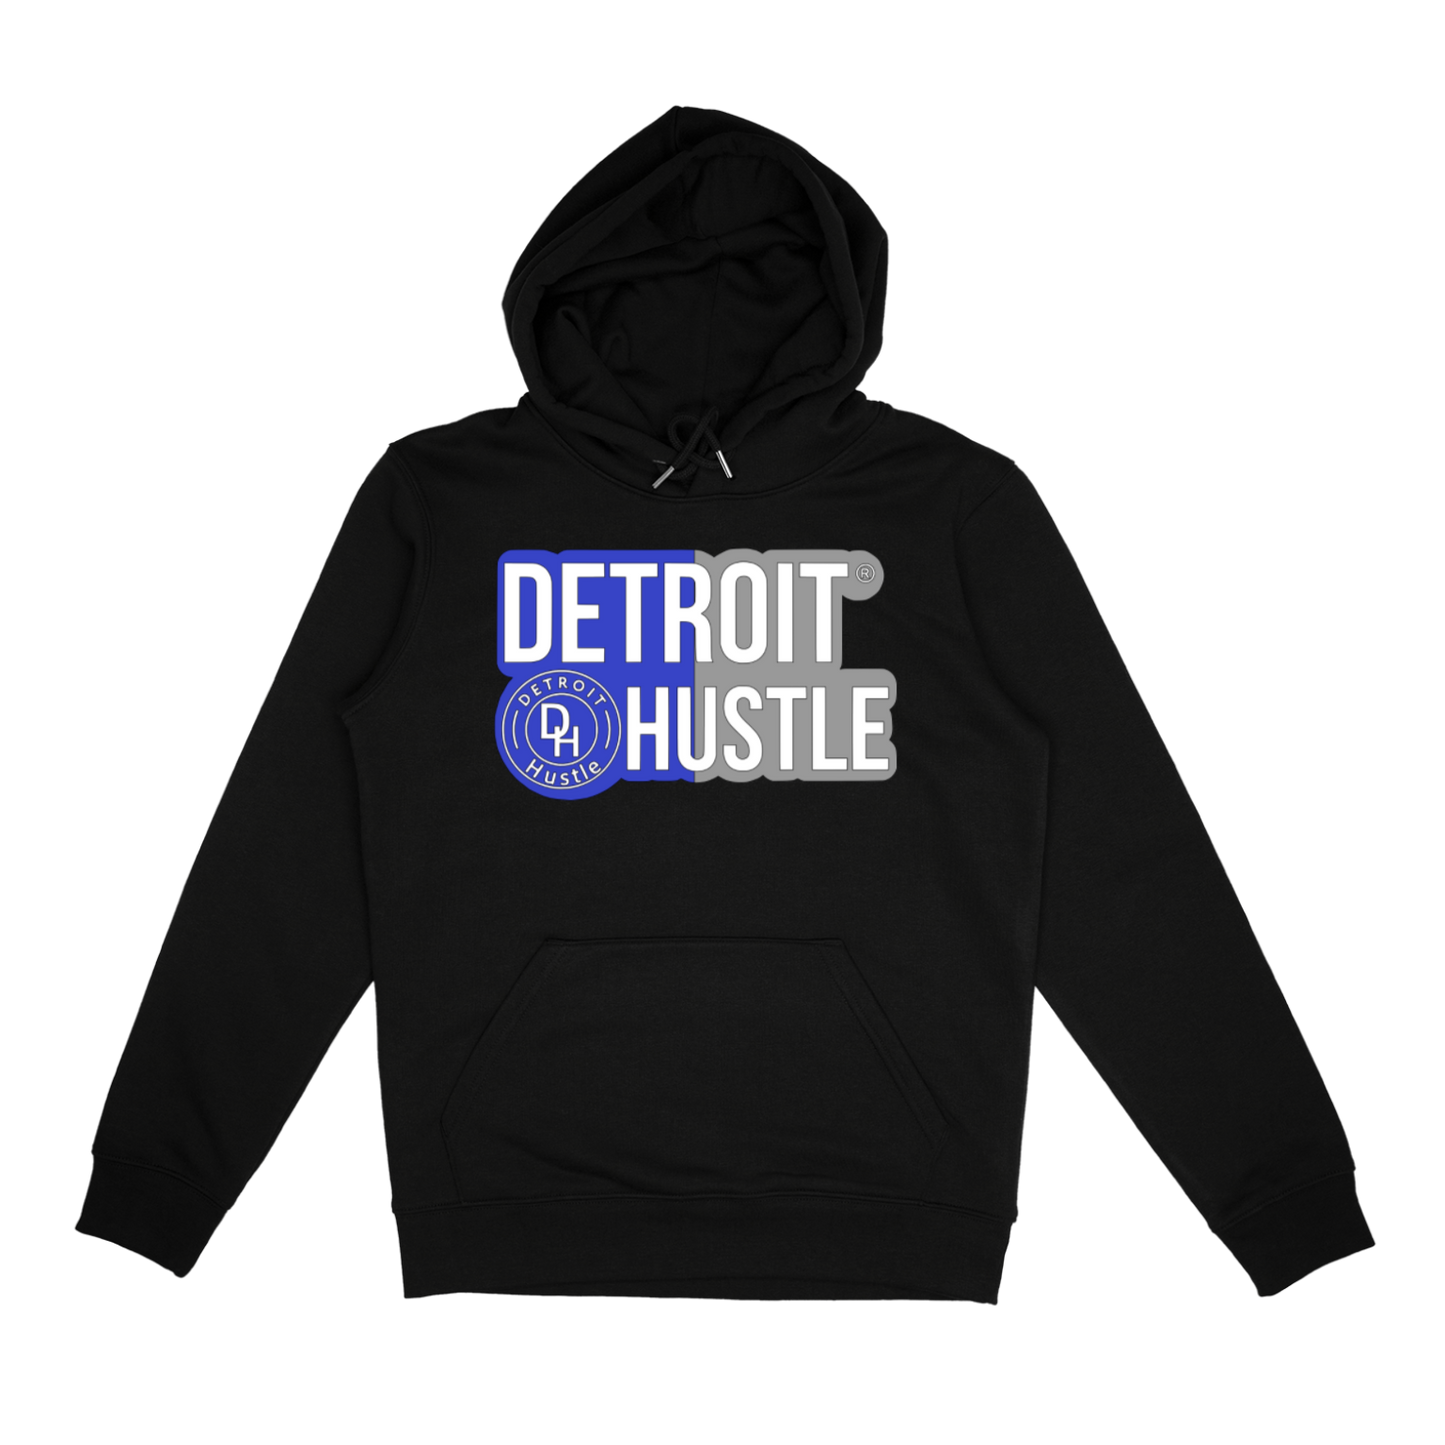 “Detroit Lions” DETROIT HUSTLE hoodie